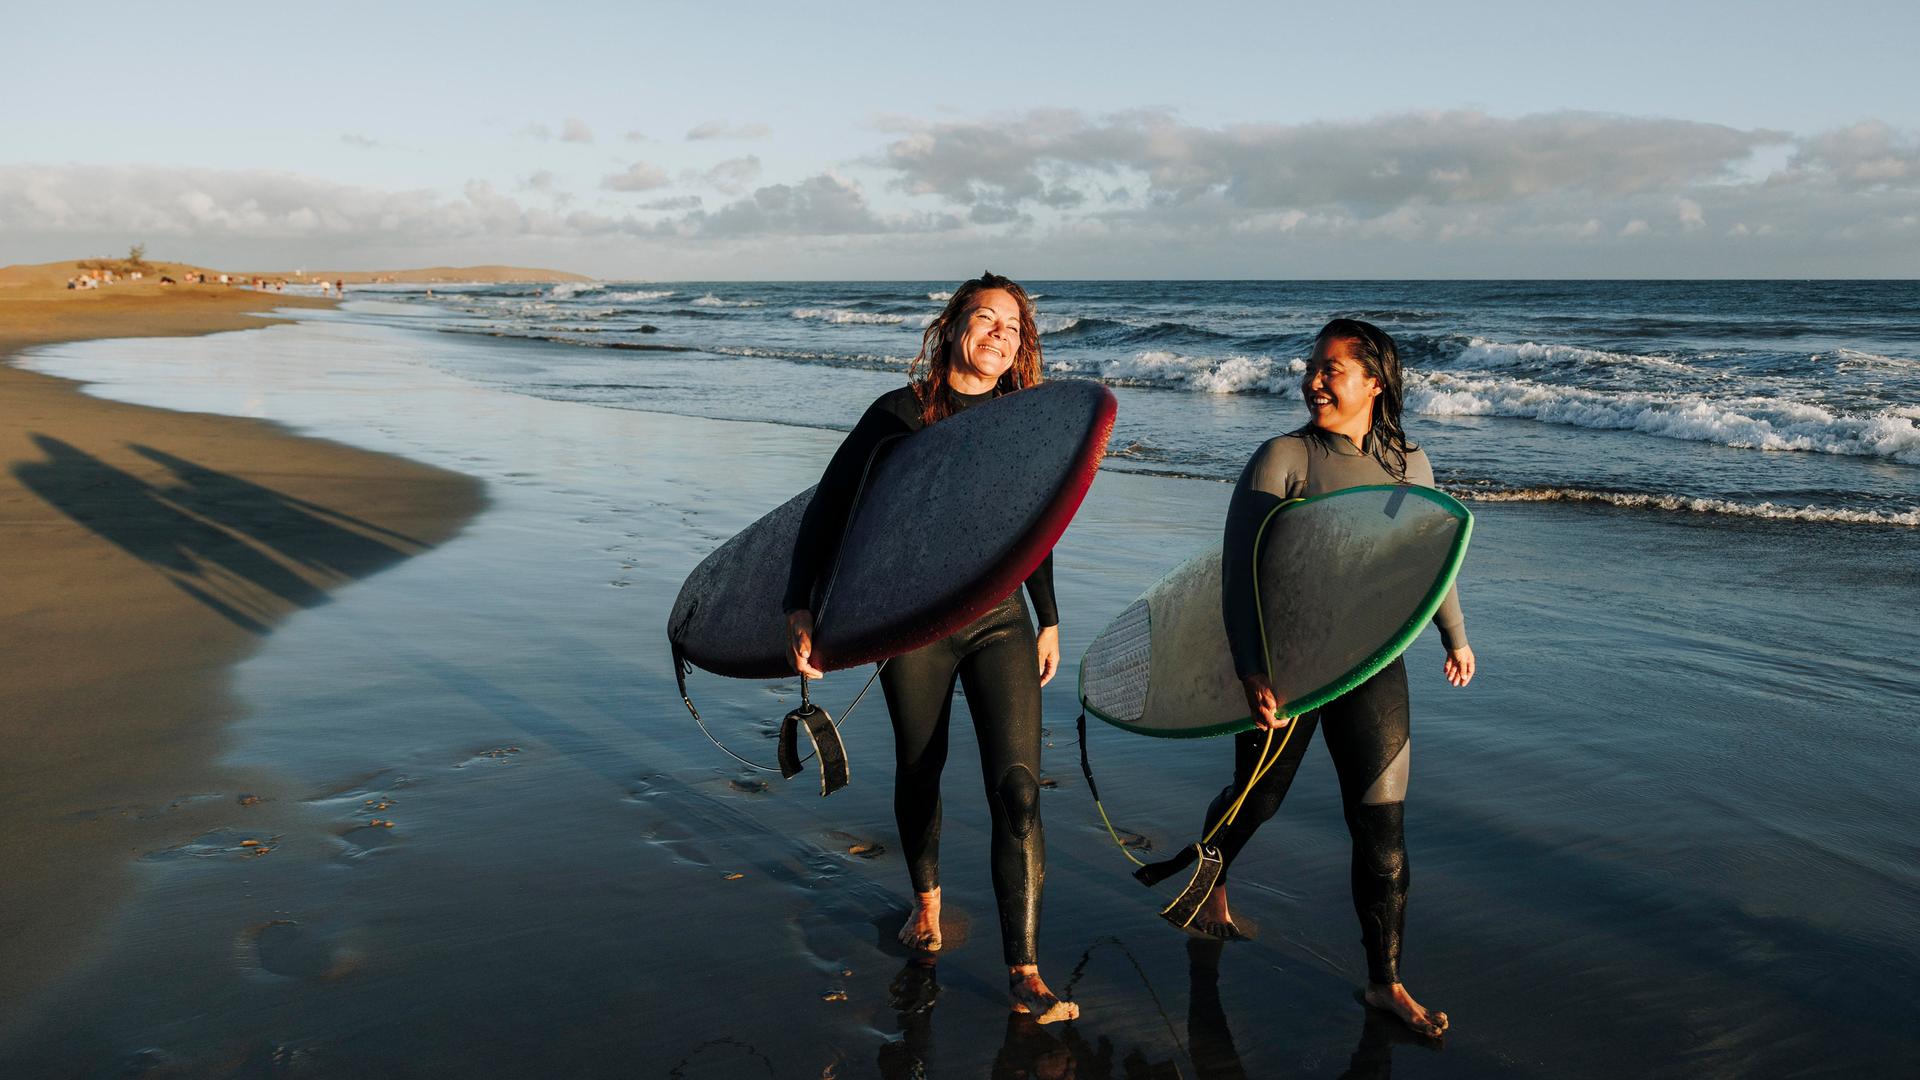 Zwei Frauen laufen mit ihren Surfboards nebeneinander an einem Strand entlang.